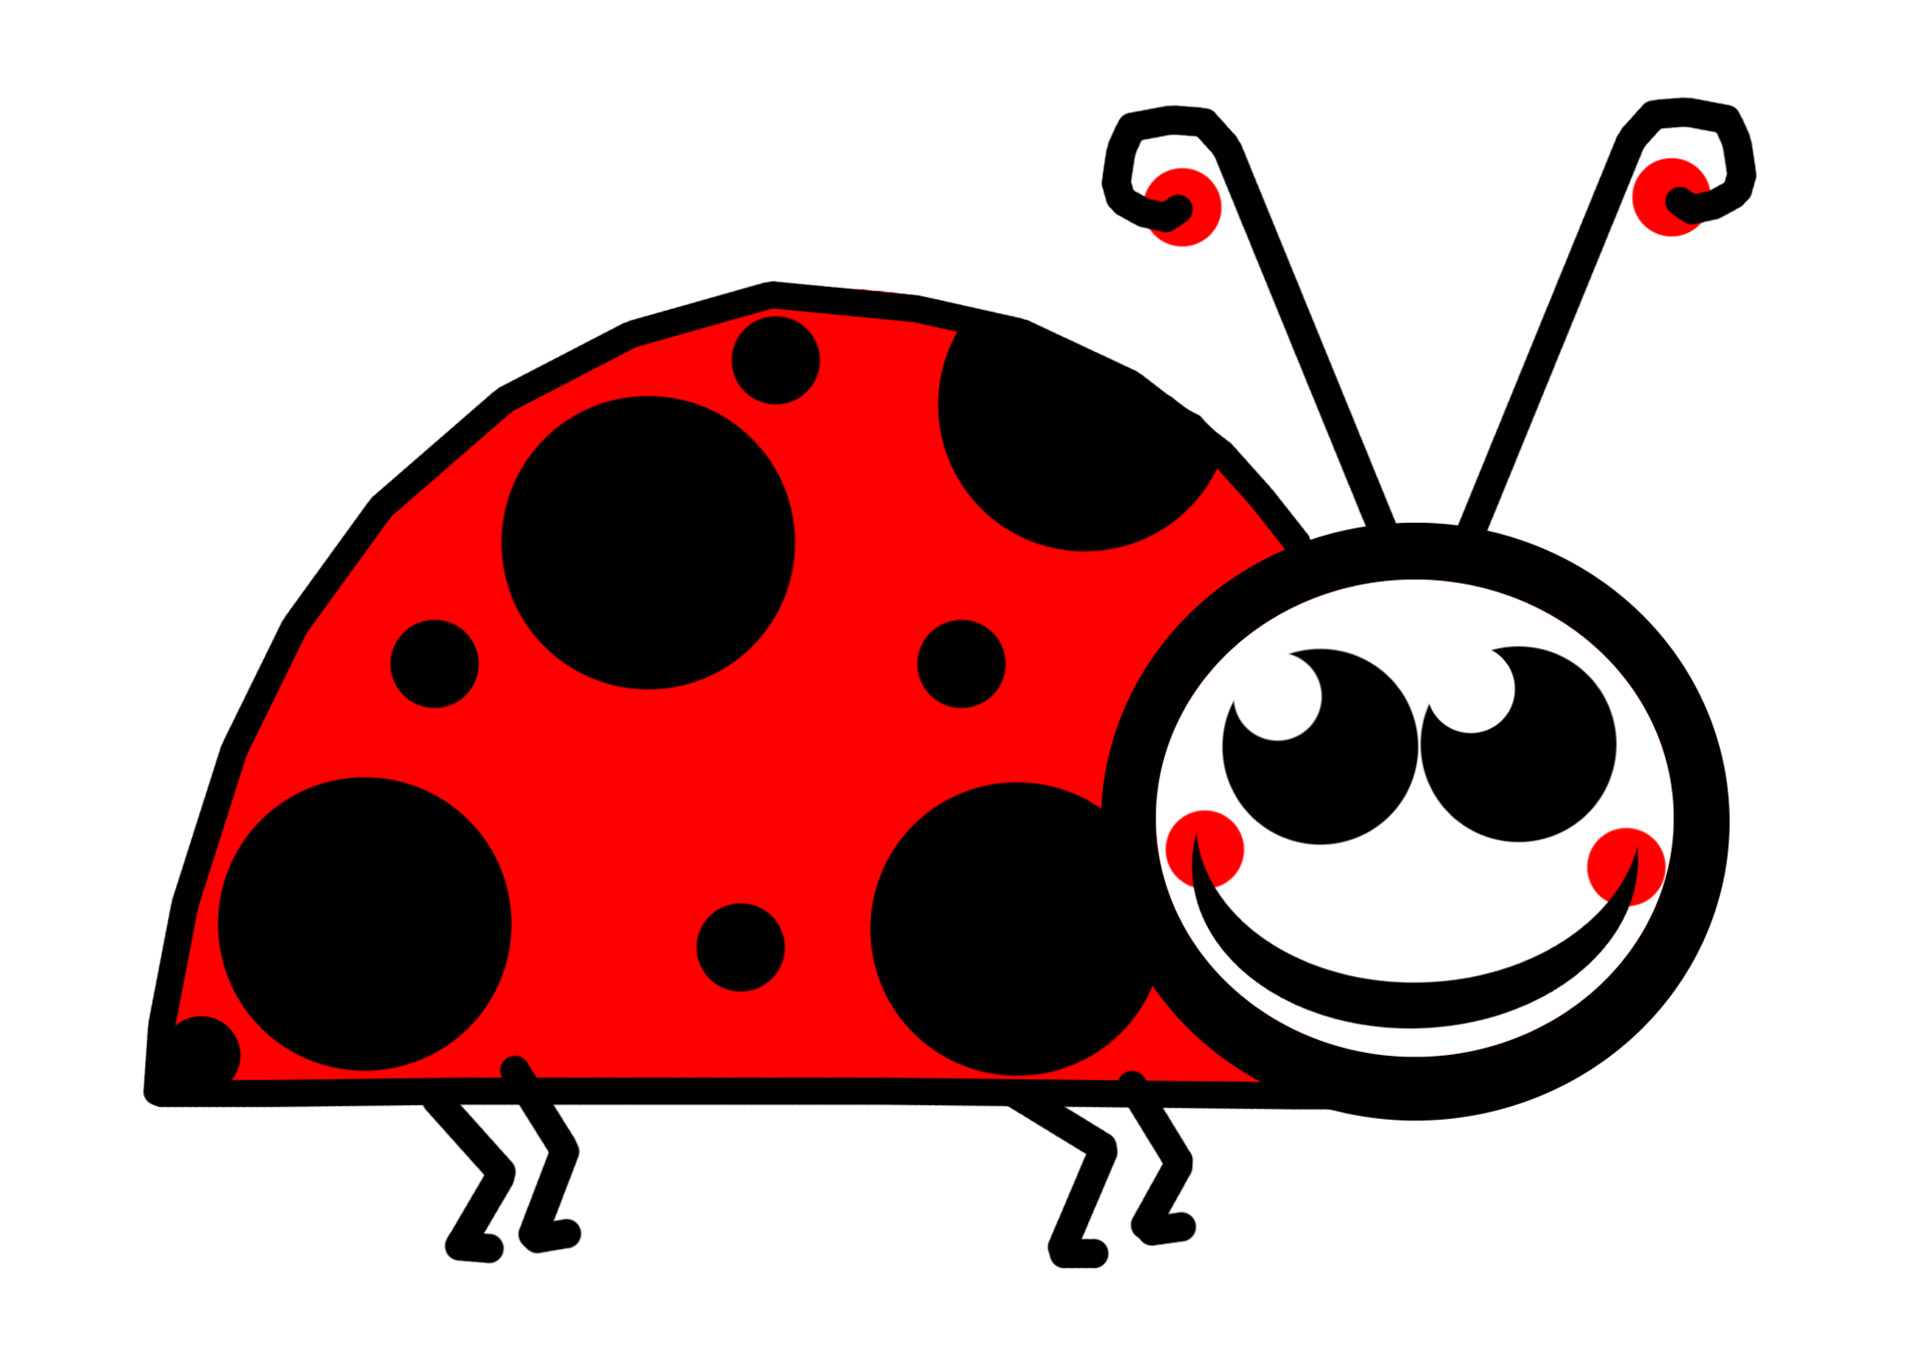 Joyful Ladybug